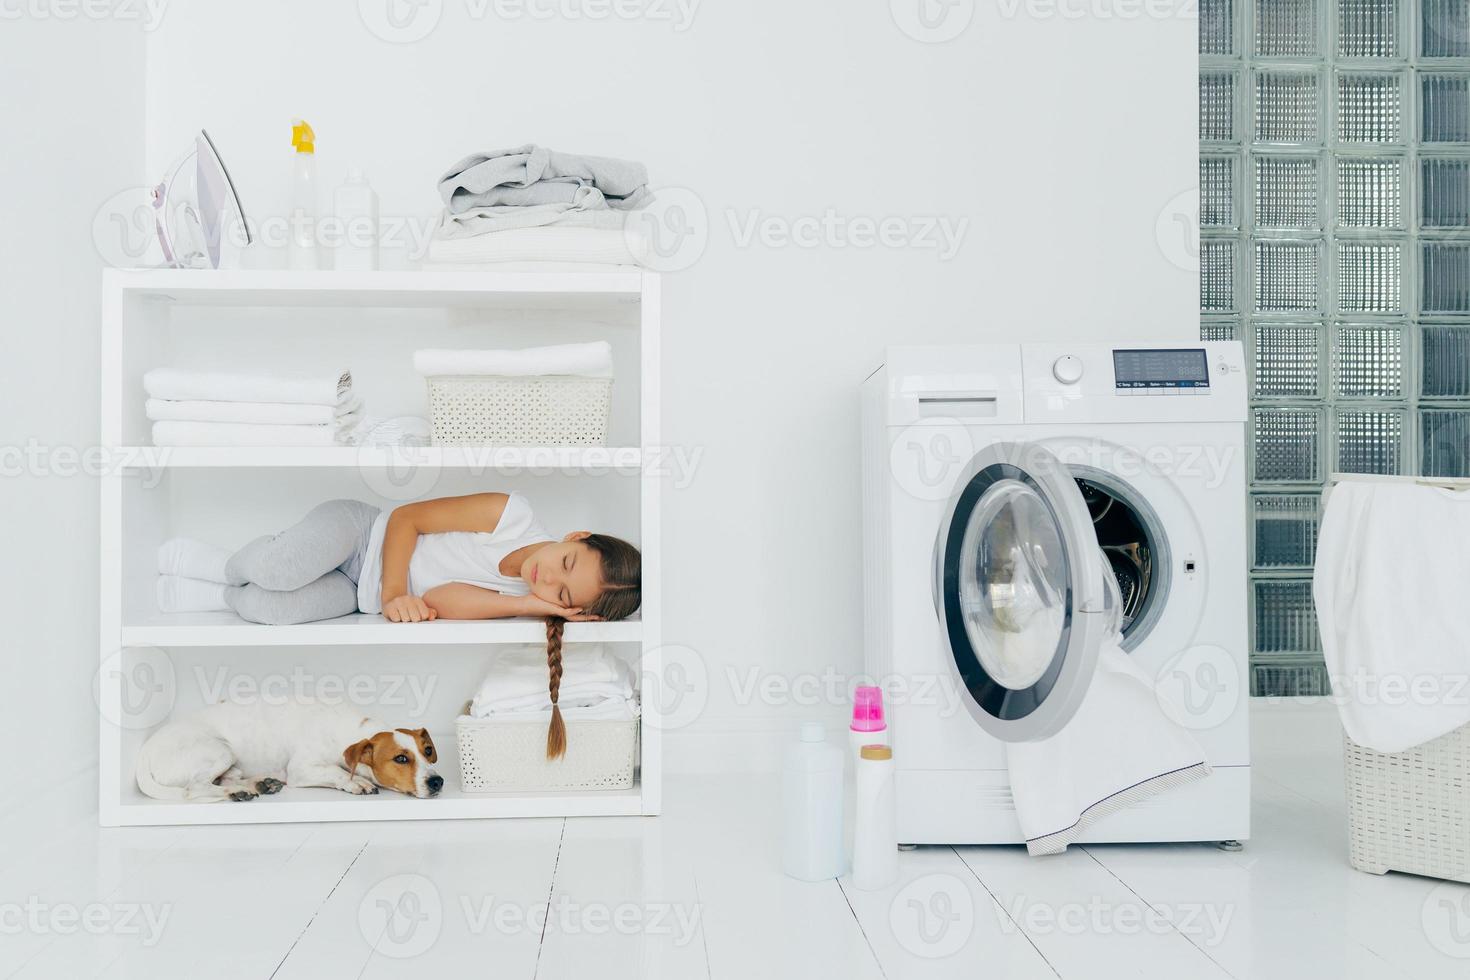 photo intérieure d'une petite fille qui dort sur la console avec son chien préféré, se repose dans la buanderie avec une machine à laver remplie de linge, des bouteilles avec du détergent. les enfants, la fatigue et les travaux ménagers.